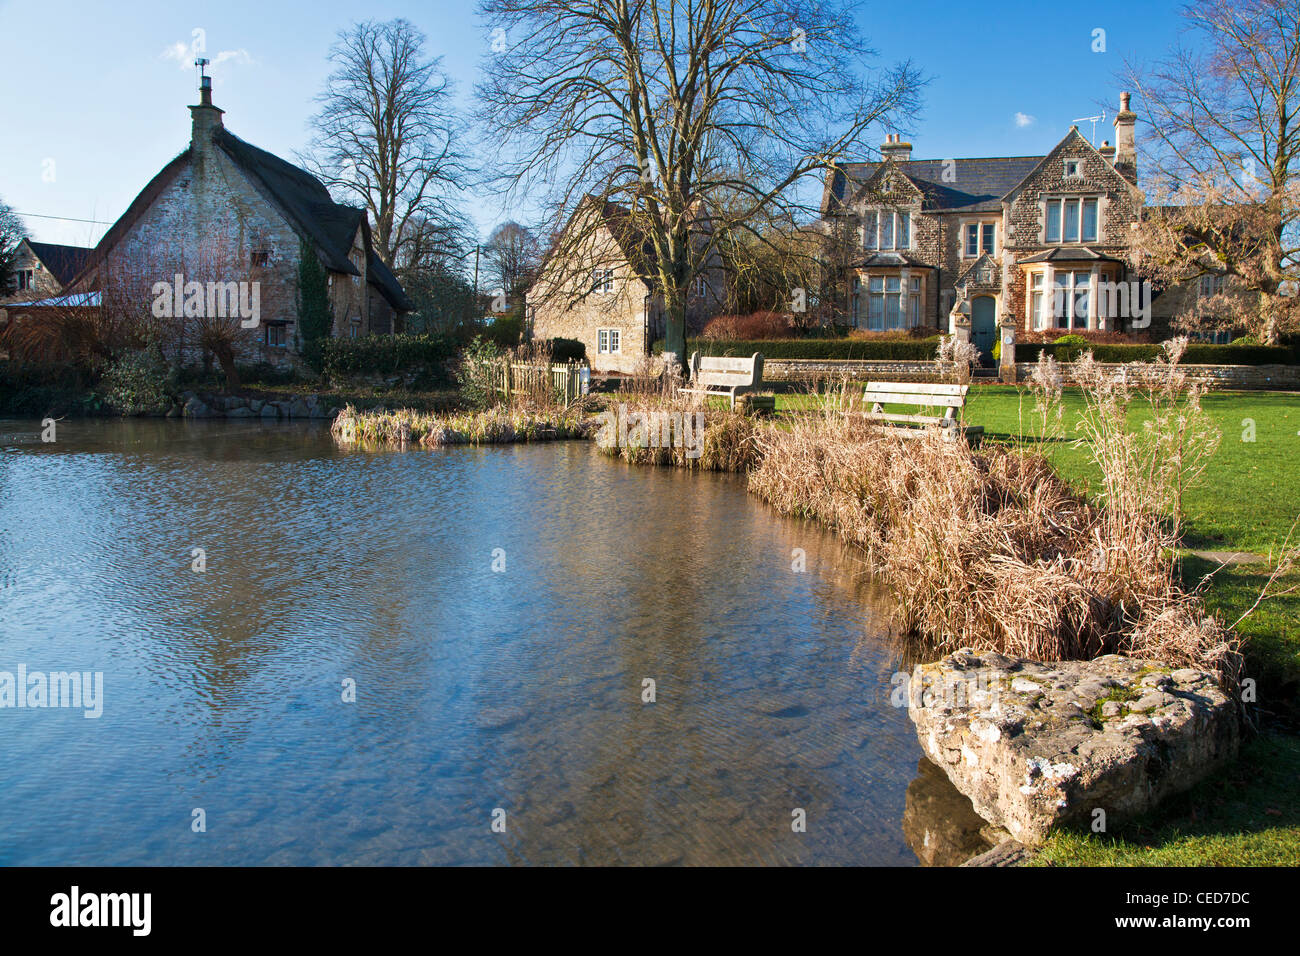 Las casas alrededor de un típico pueblo inglés verde con estanque de patos en primer plano en Biddestone, Wiltshire, Inglaterra, Reino Unido. Foto de stock